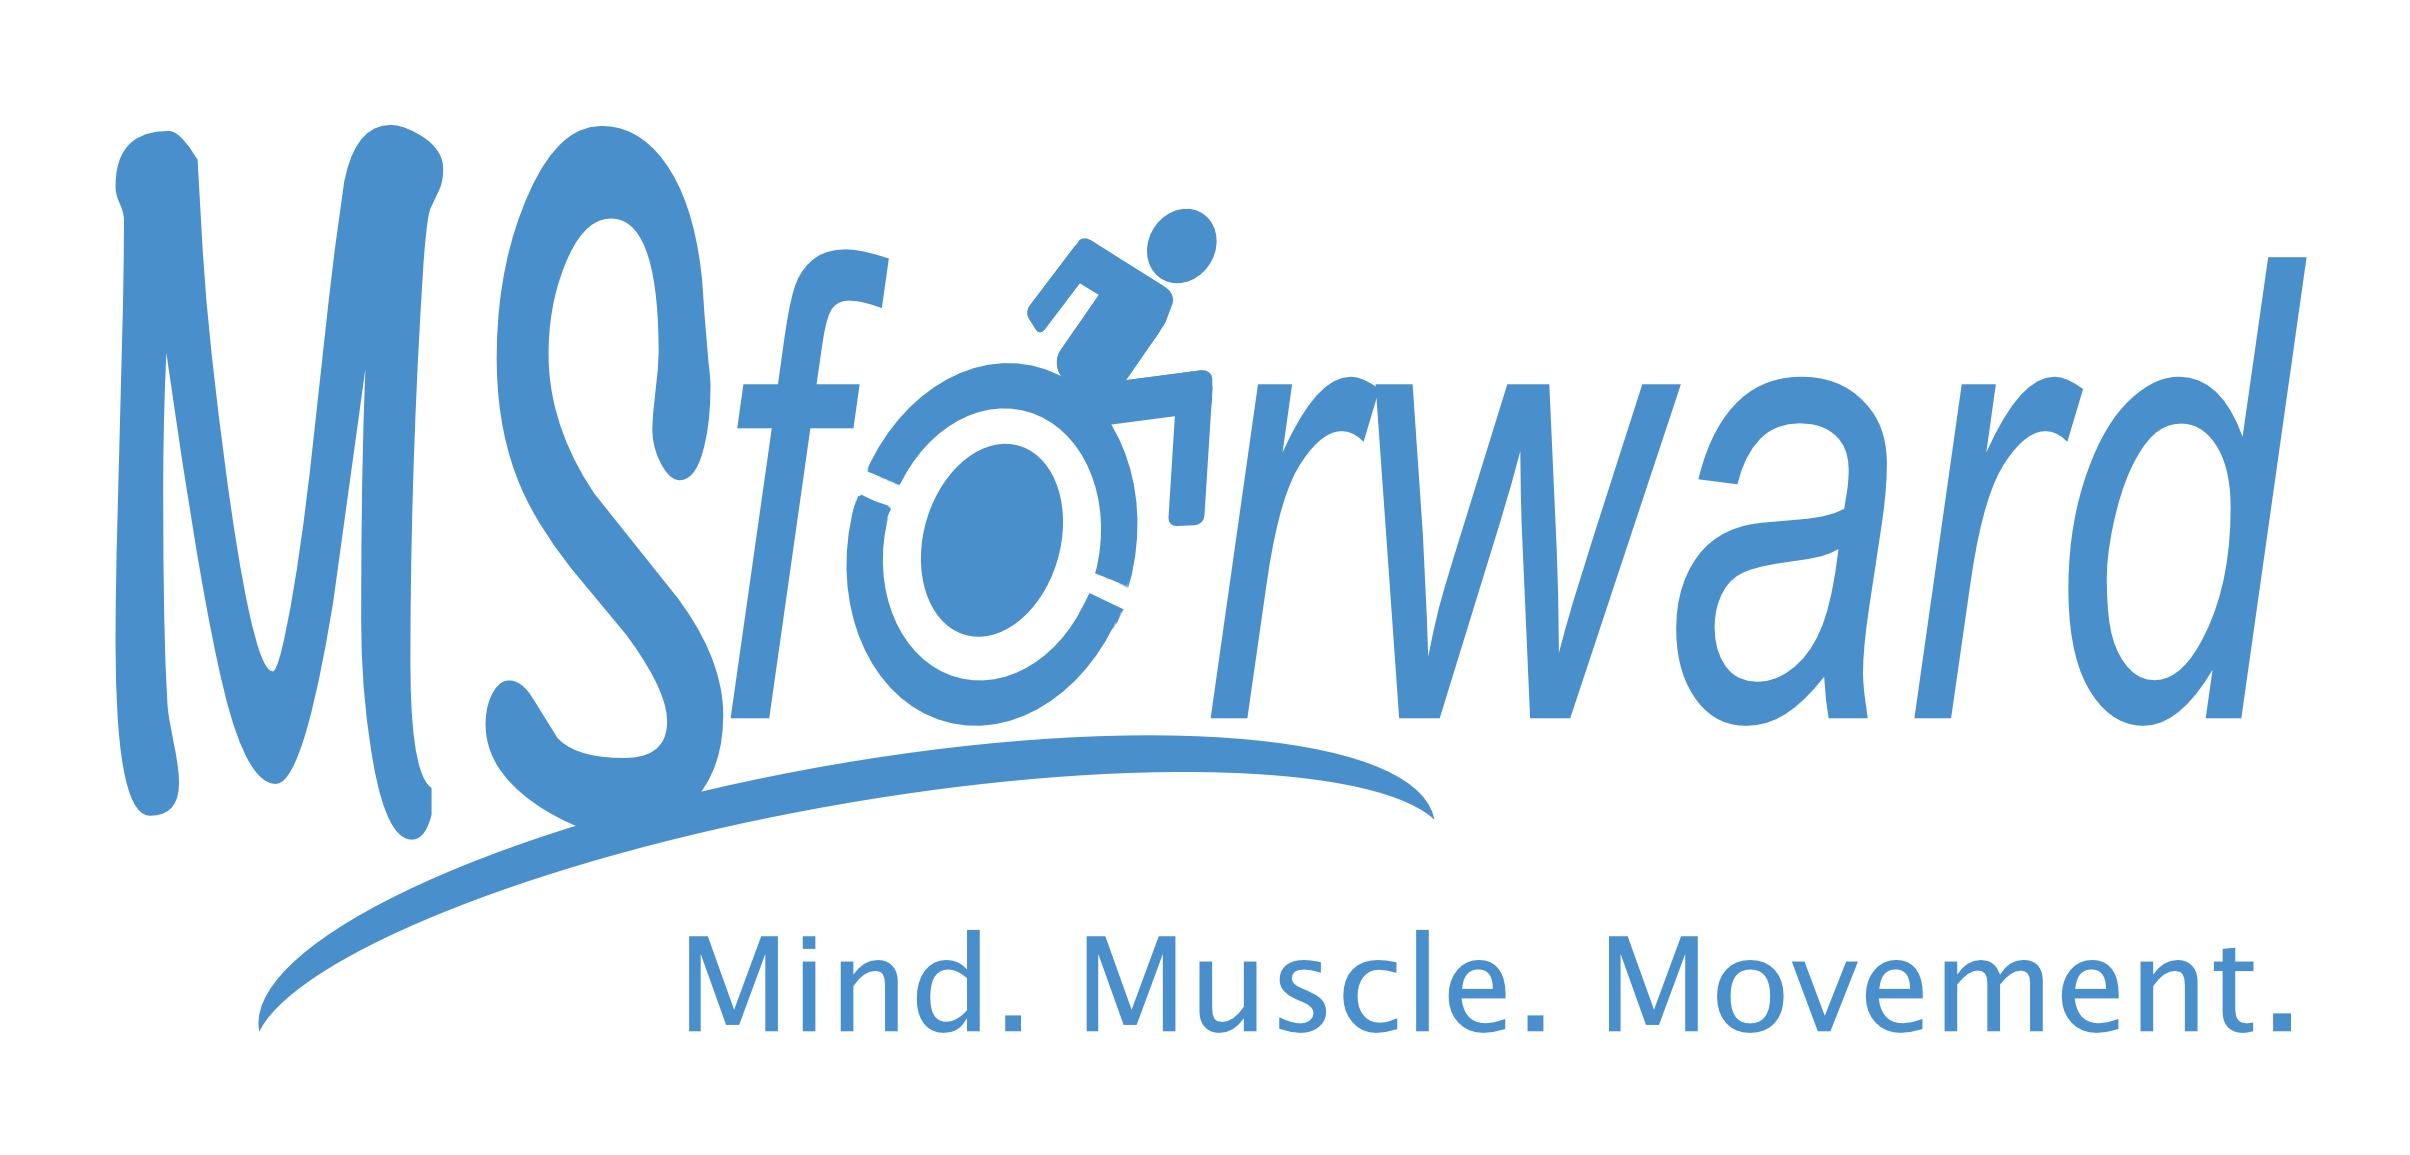 msforward-logo-blue